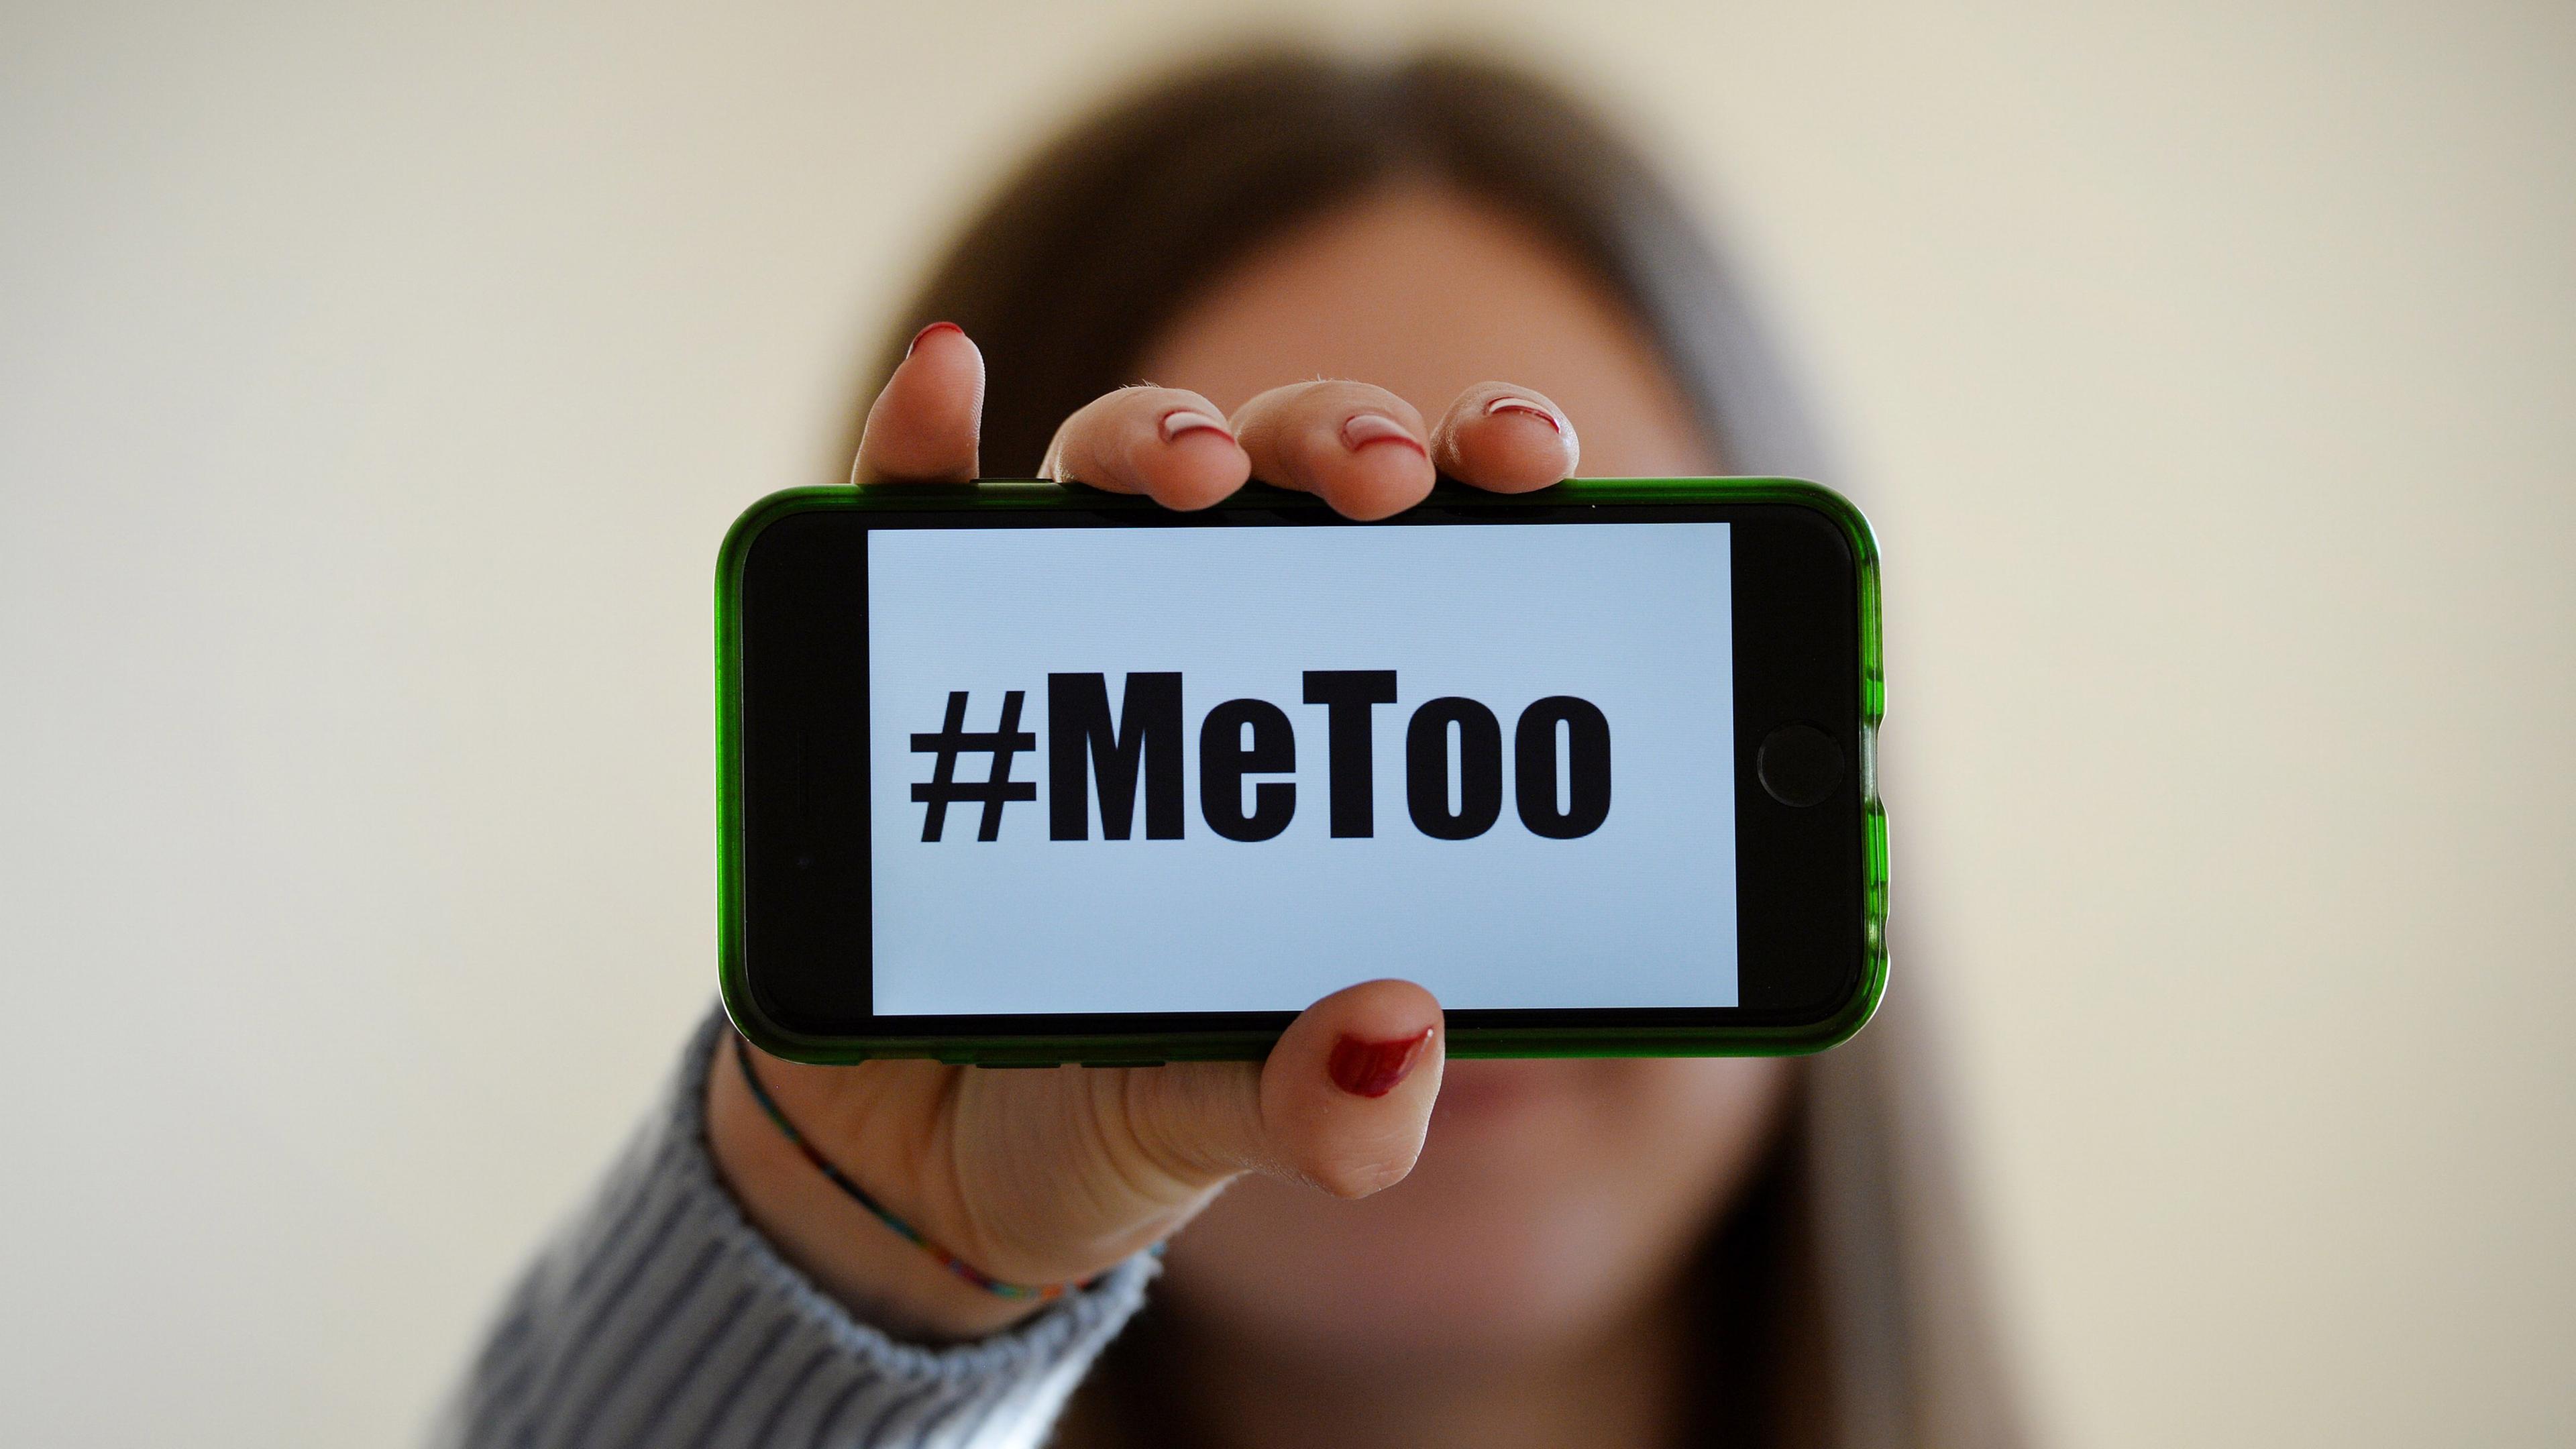 Frauenhand hält Handy, auf dem Bildschirm steht groß #MeToo